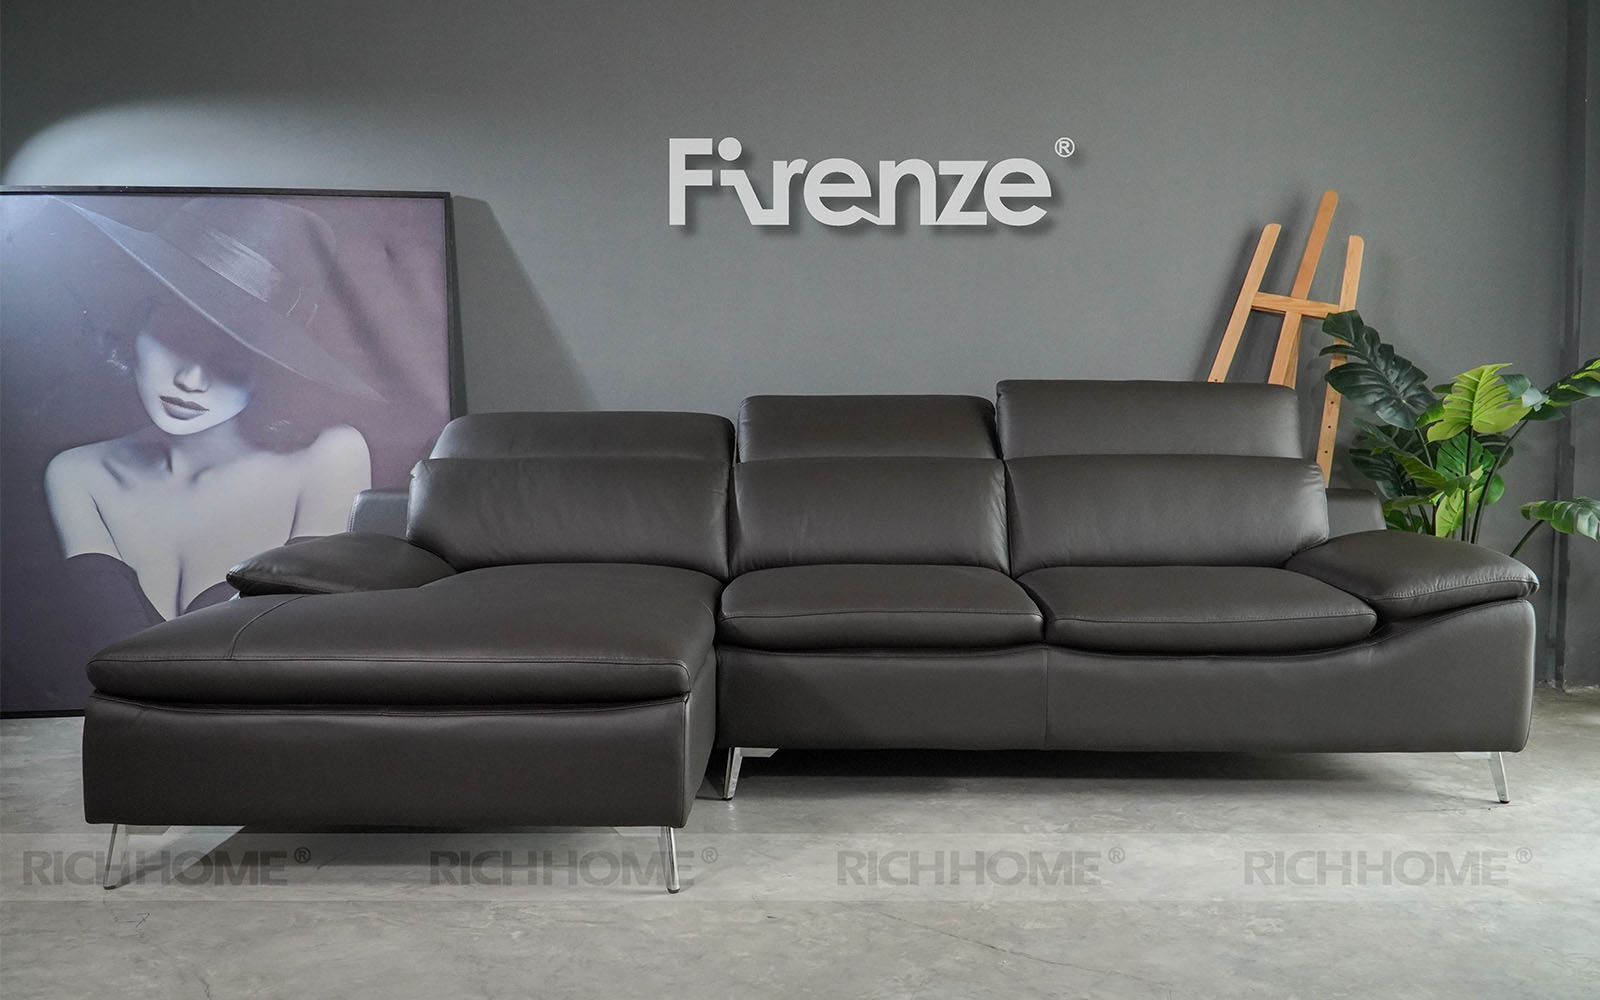 20 mẫu ghế sofa góc da màu đen đẹp cho phòng khách - Ảnh 7